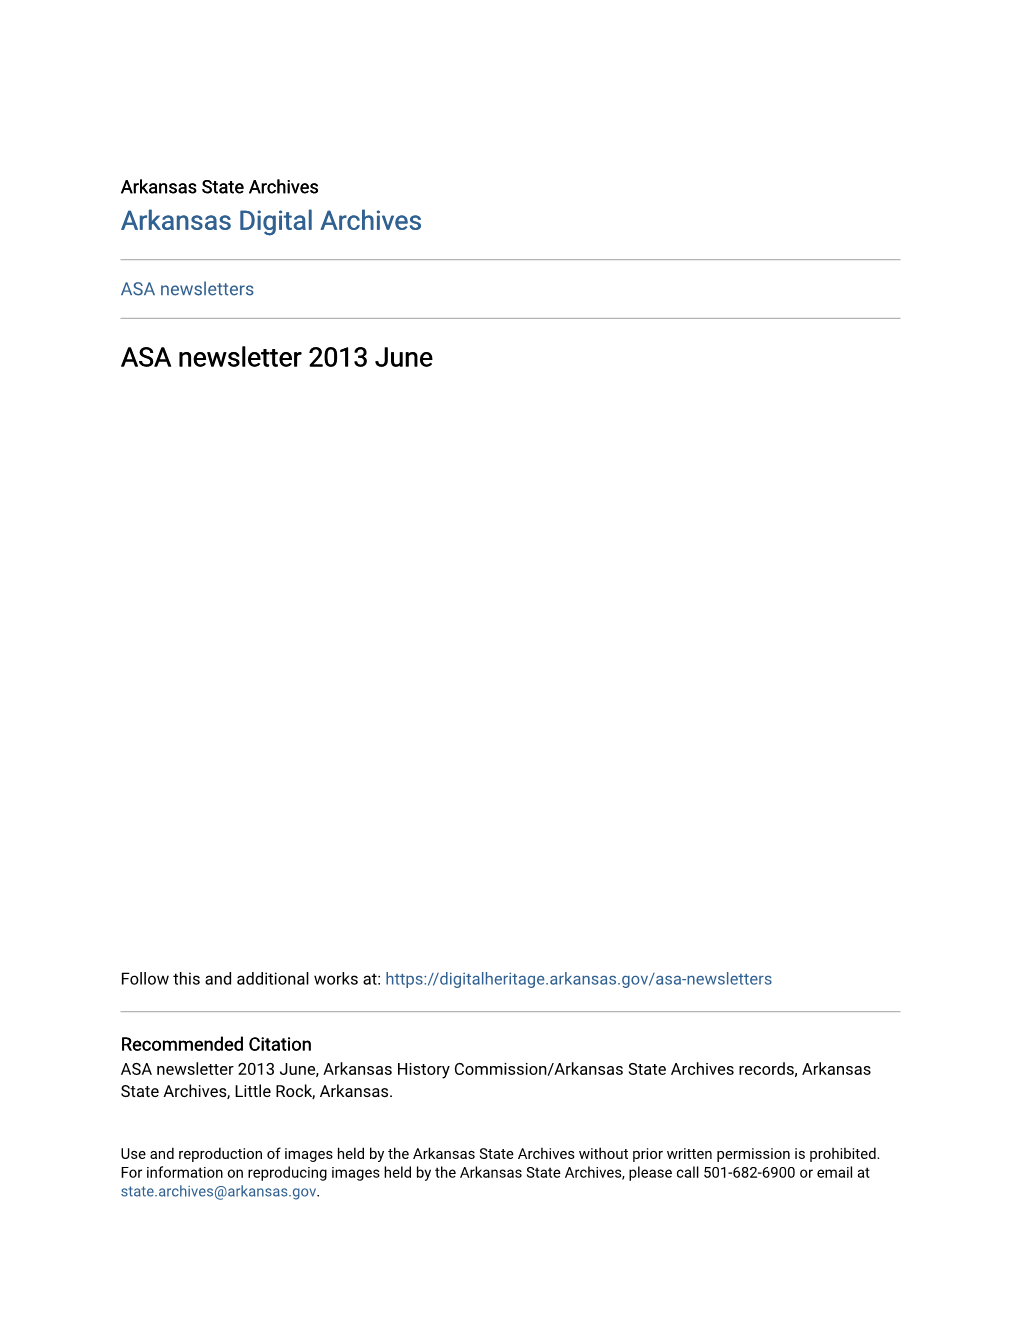 ASA Newsletter 2013 June